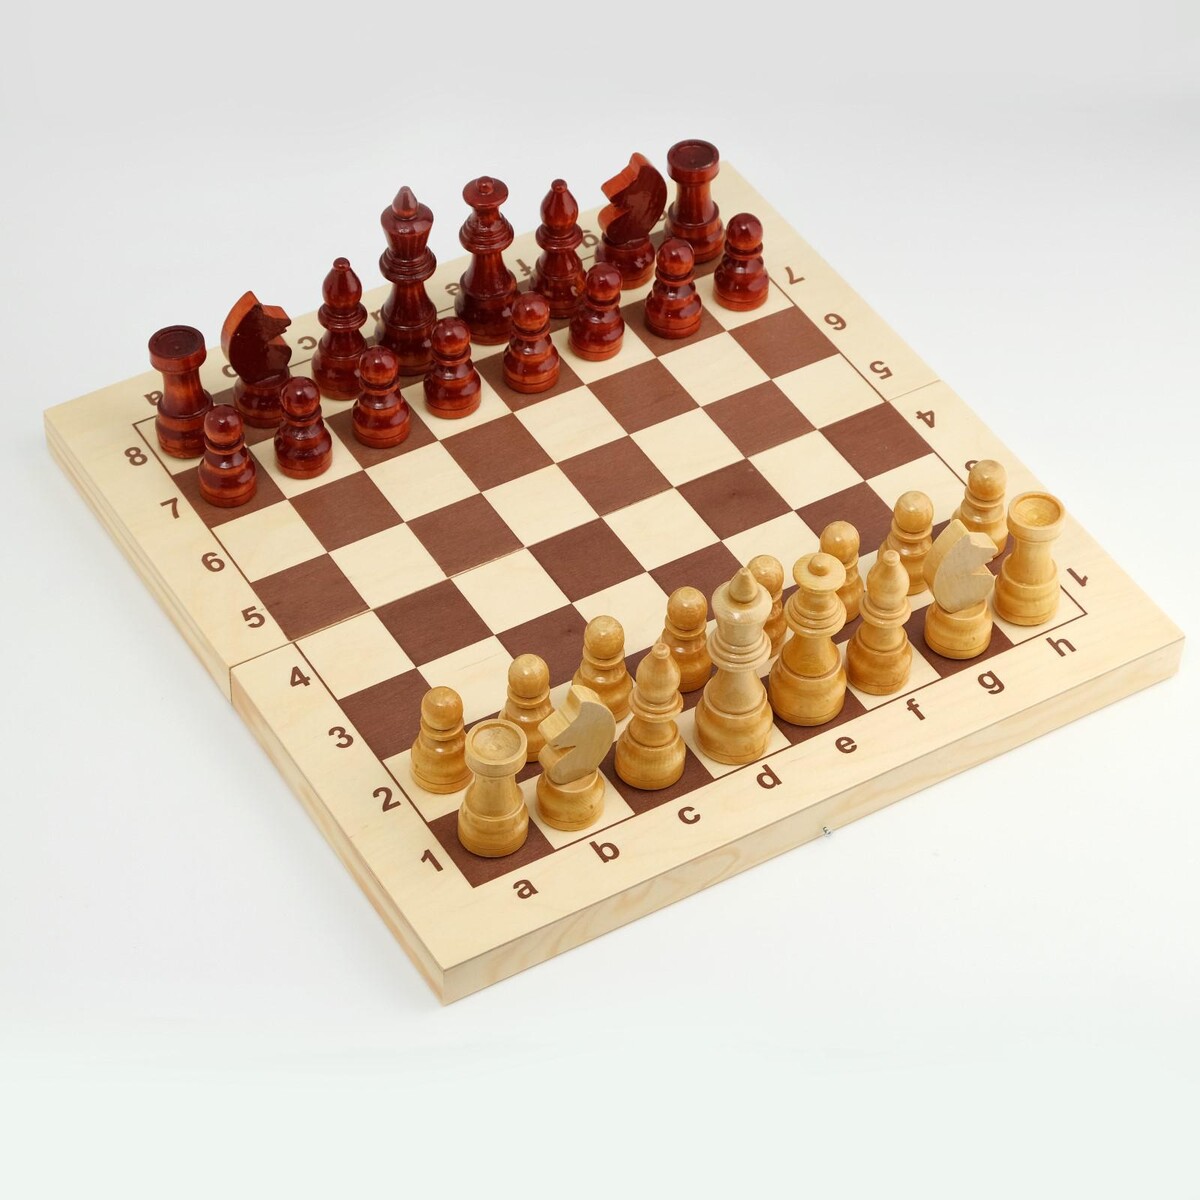 фото Шахматы деревянные гроссмейстерские, турнирные 43 х 43 см, король h-11.5 см, пешка h-5.6 см no brand